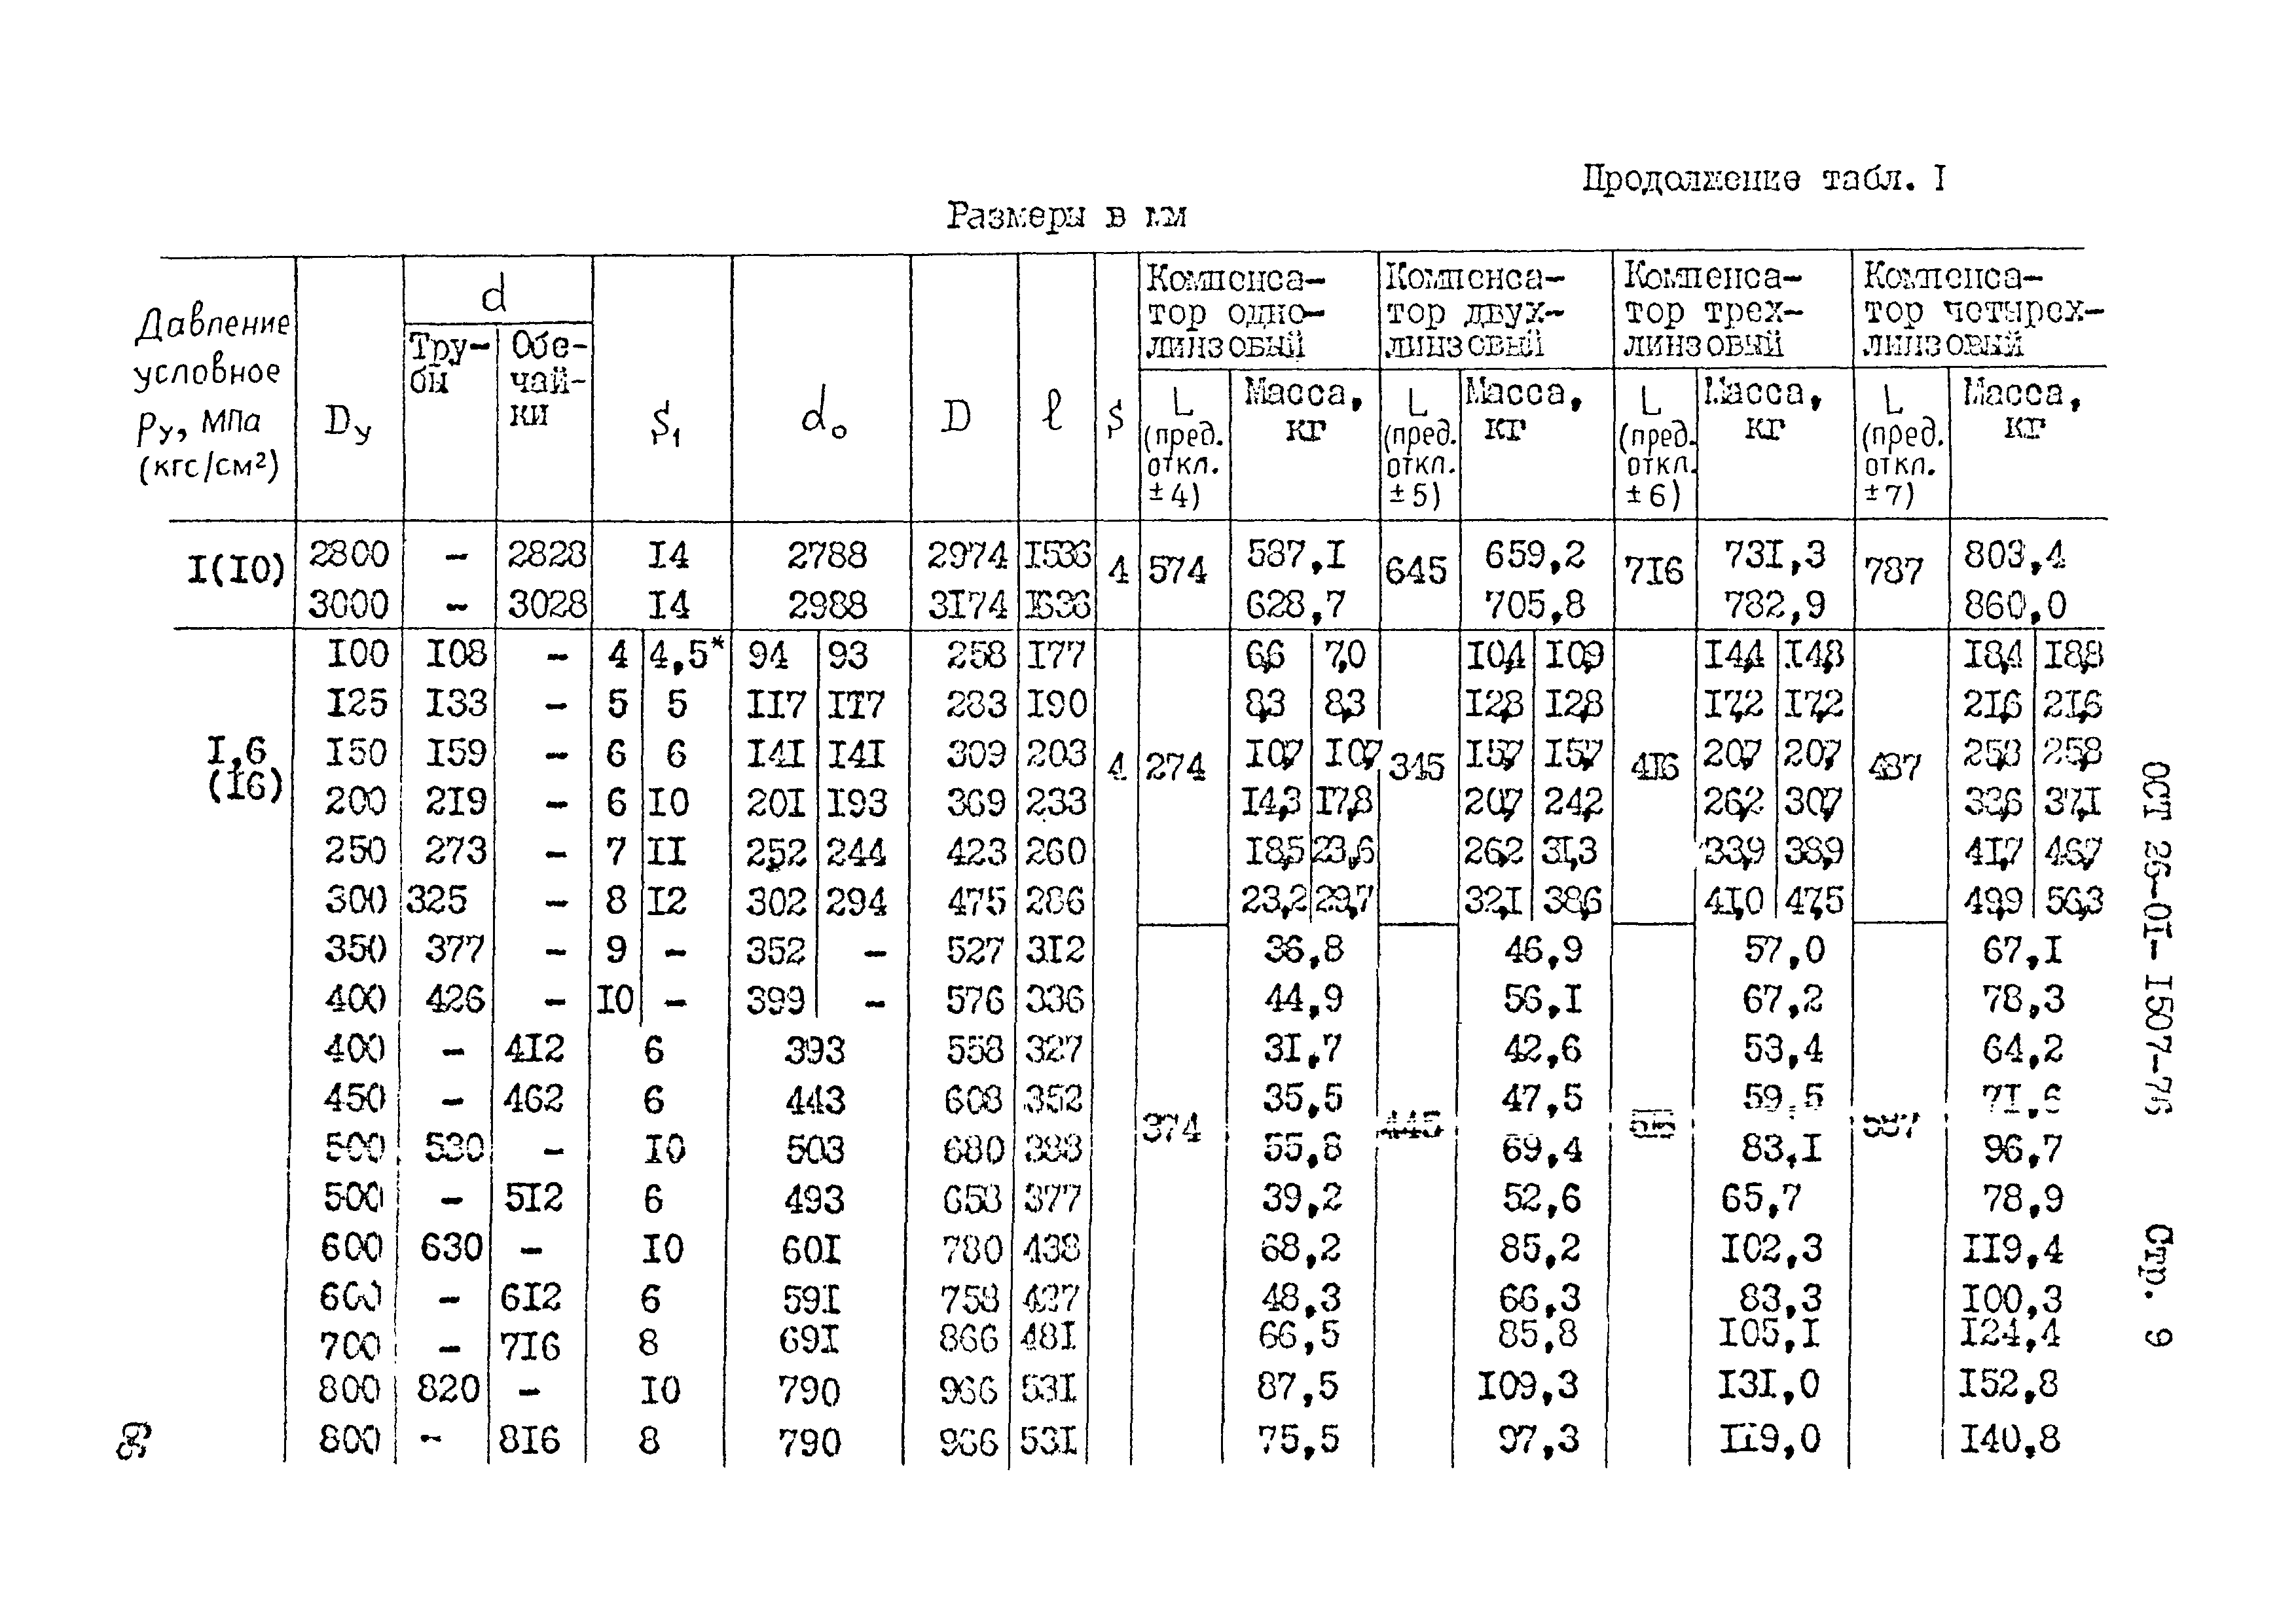 МПА В кгс/см2. Компенсатор линзовый ОСТ. 1000 кгс см2